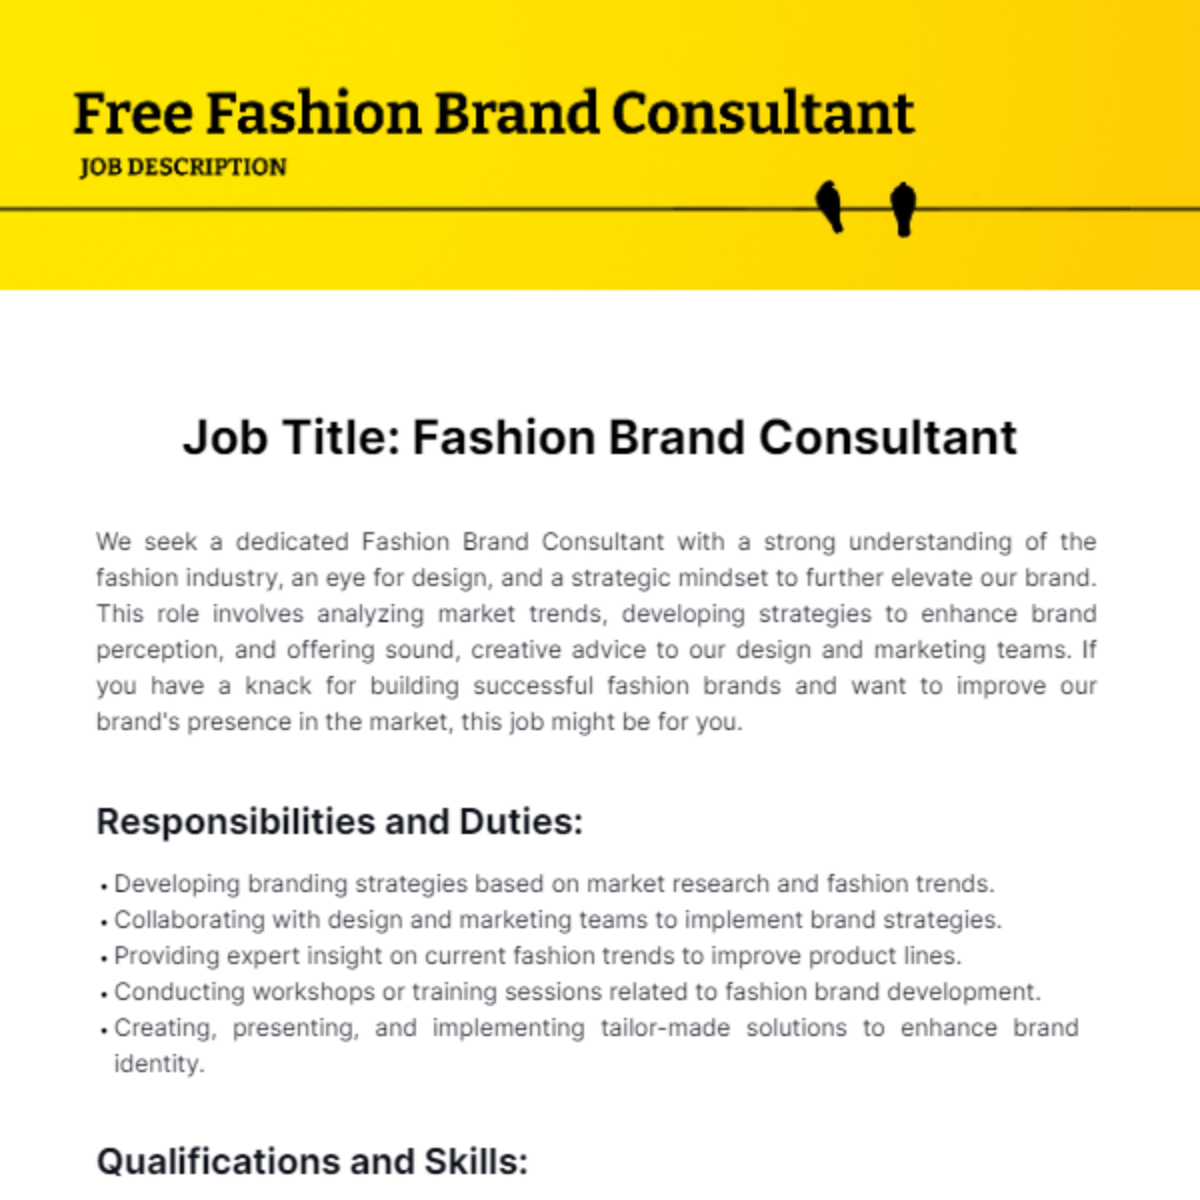 Free Fashion Brand Consultant Job Description Template